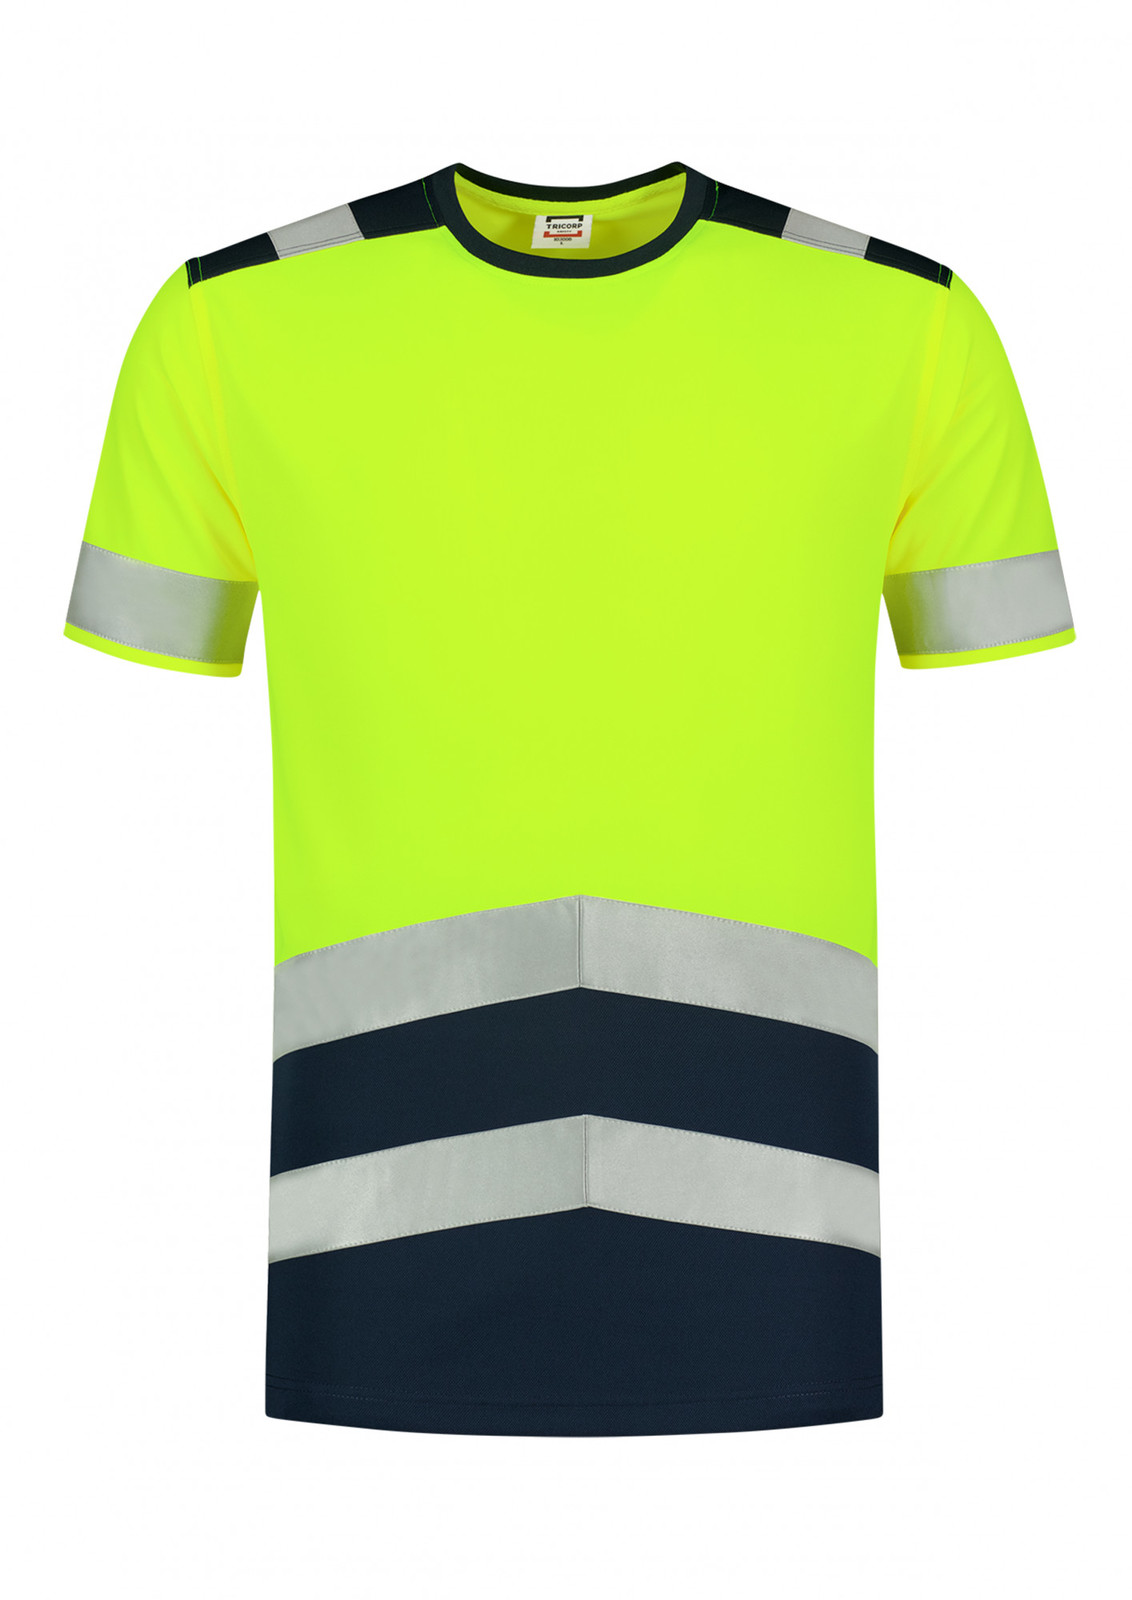 Unisex reflexné tričko Tricorp High Vis Bicolor T01 - veľkosť: S, farba: fluorescenčno žltá